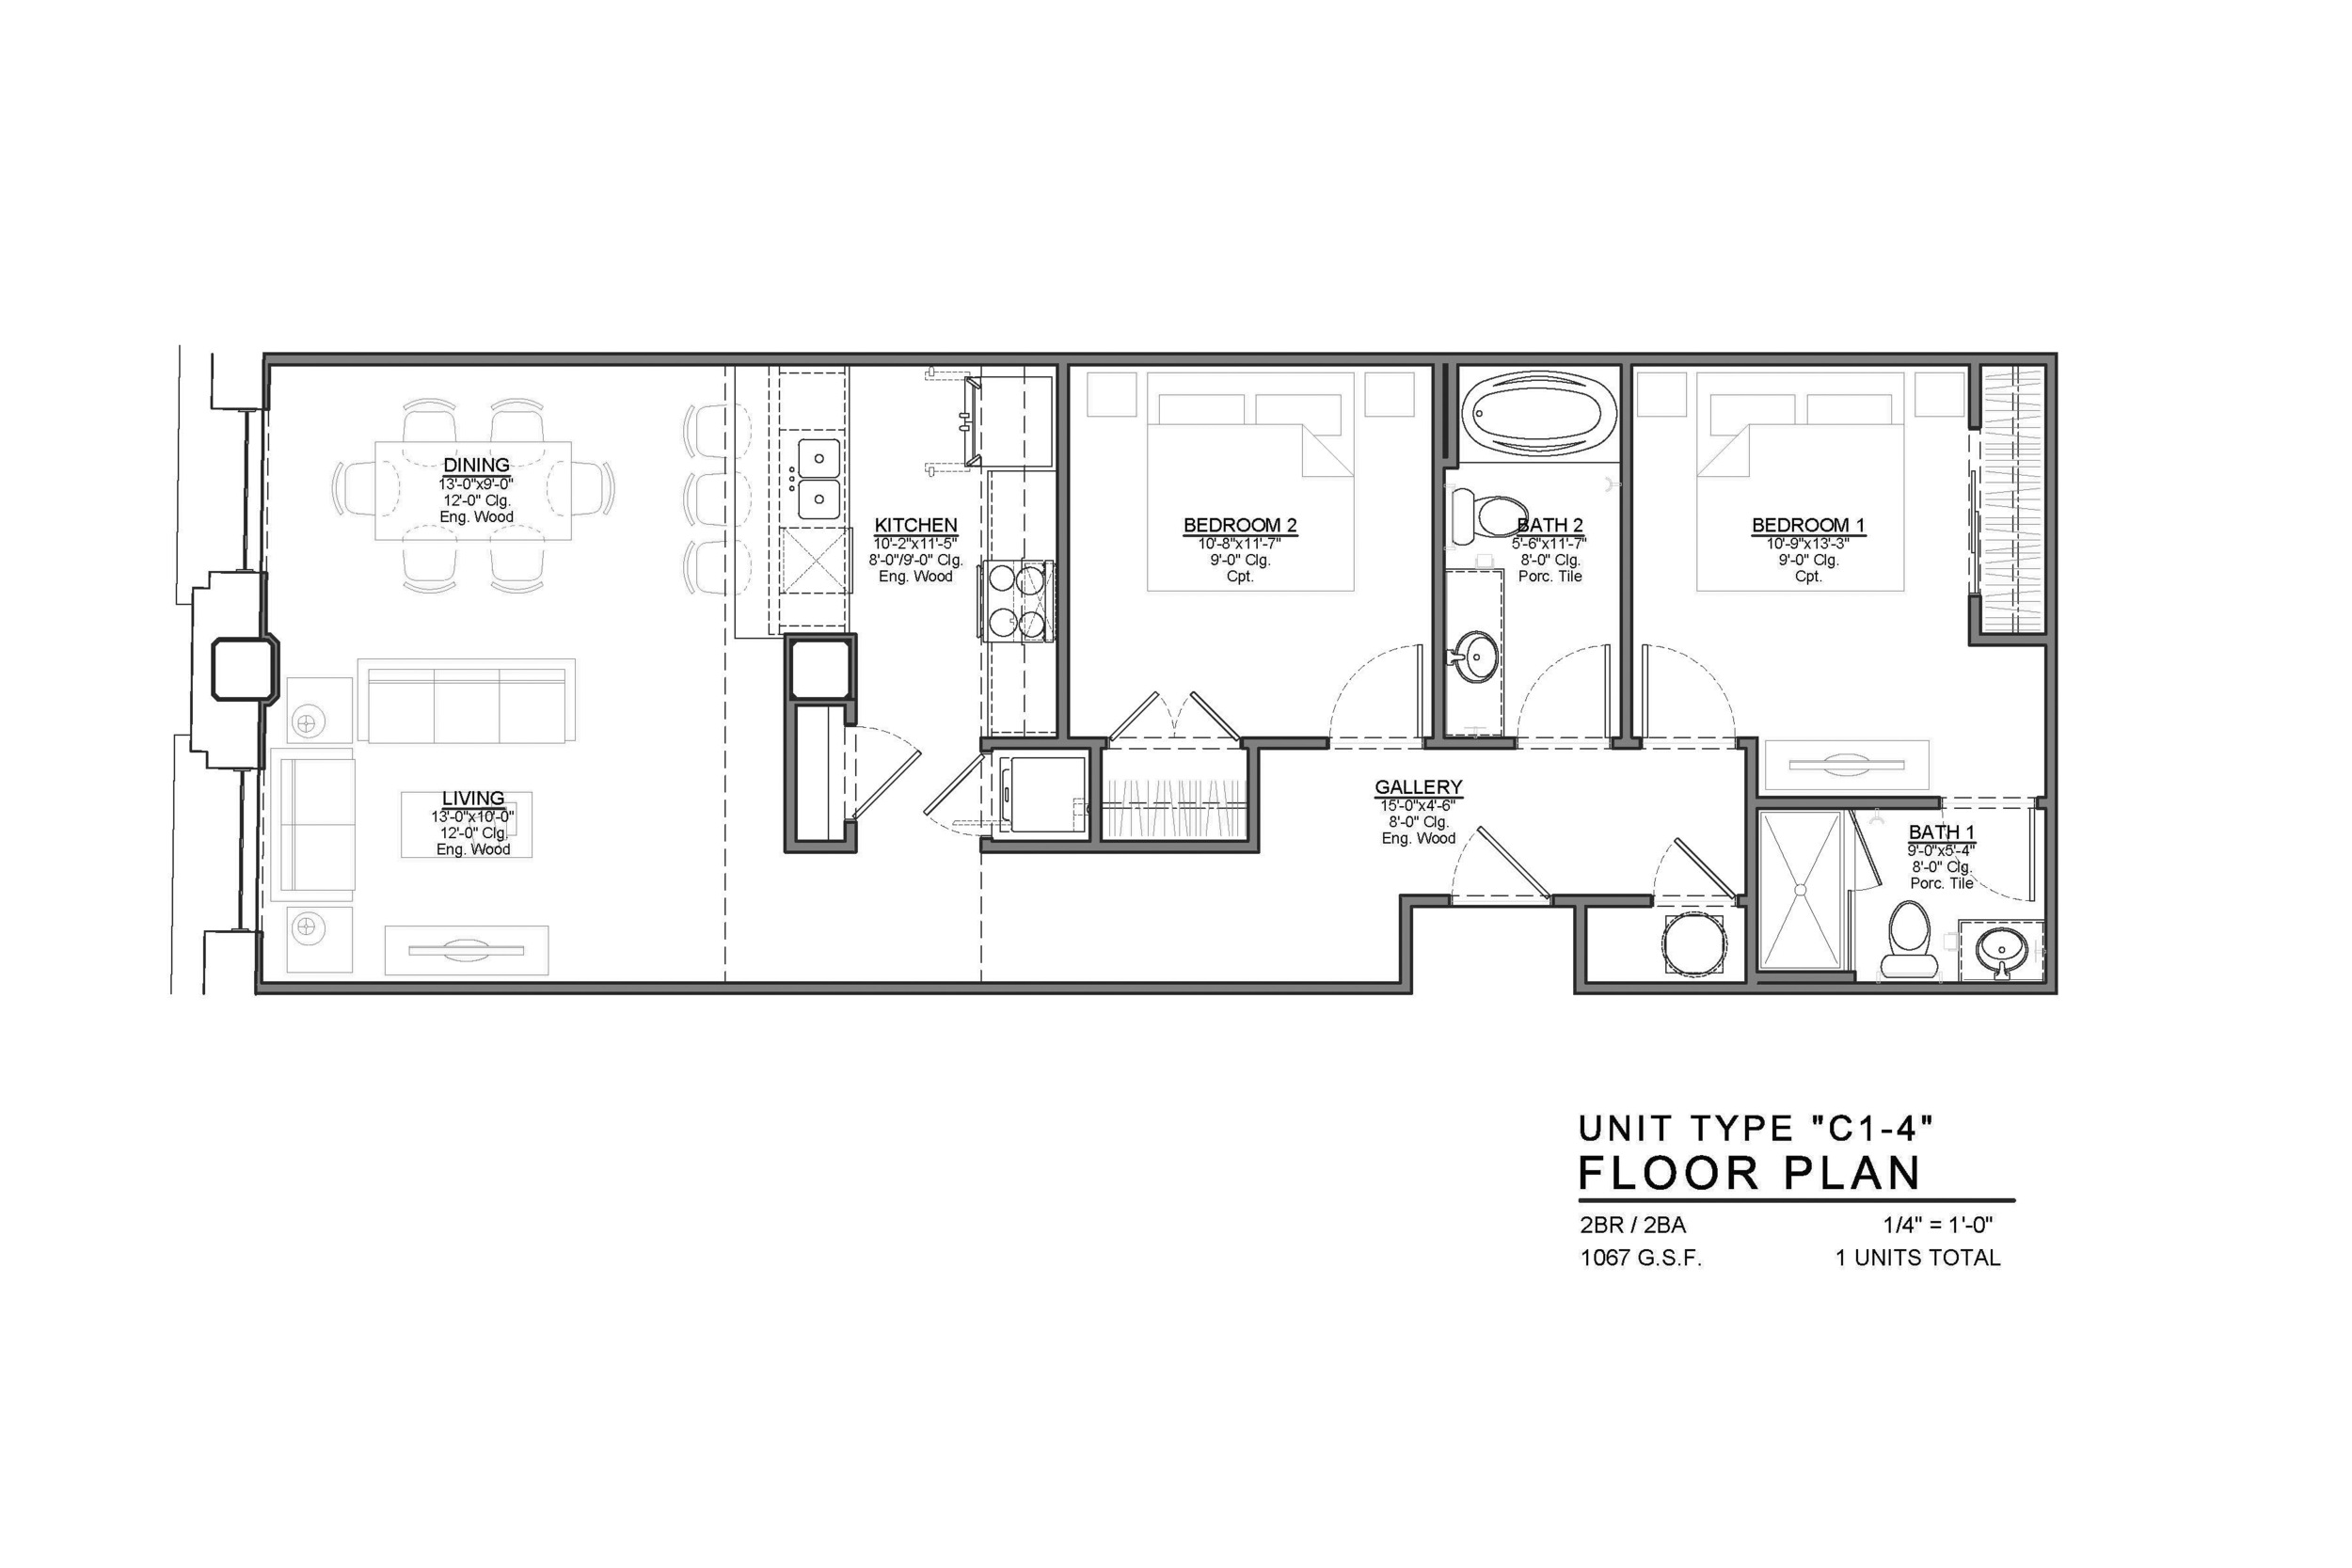 C1-4 FLOOR PLAN: 2 BEDROOM / 2 BATH